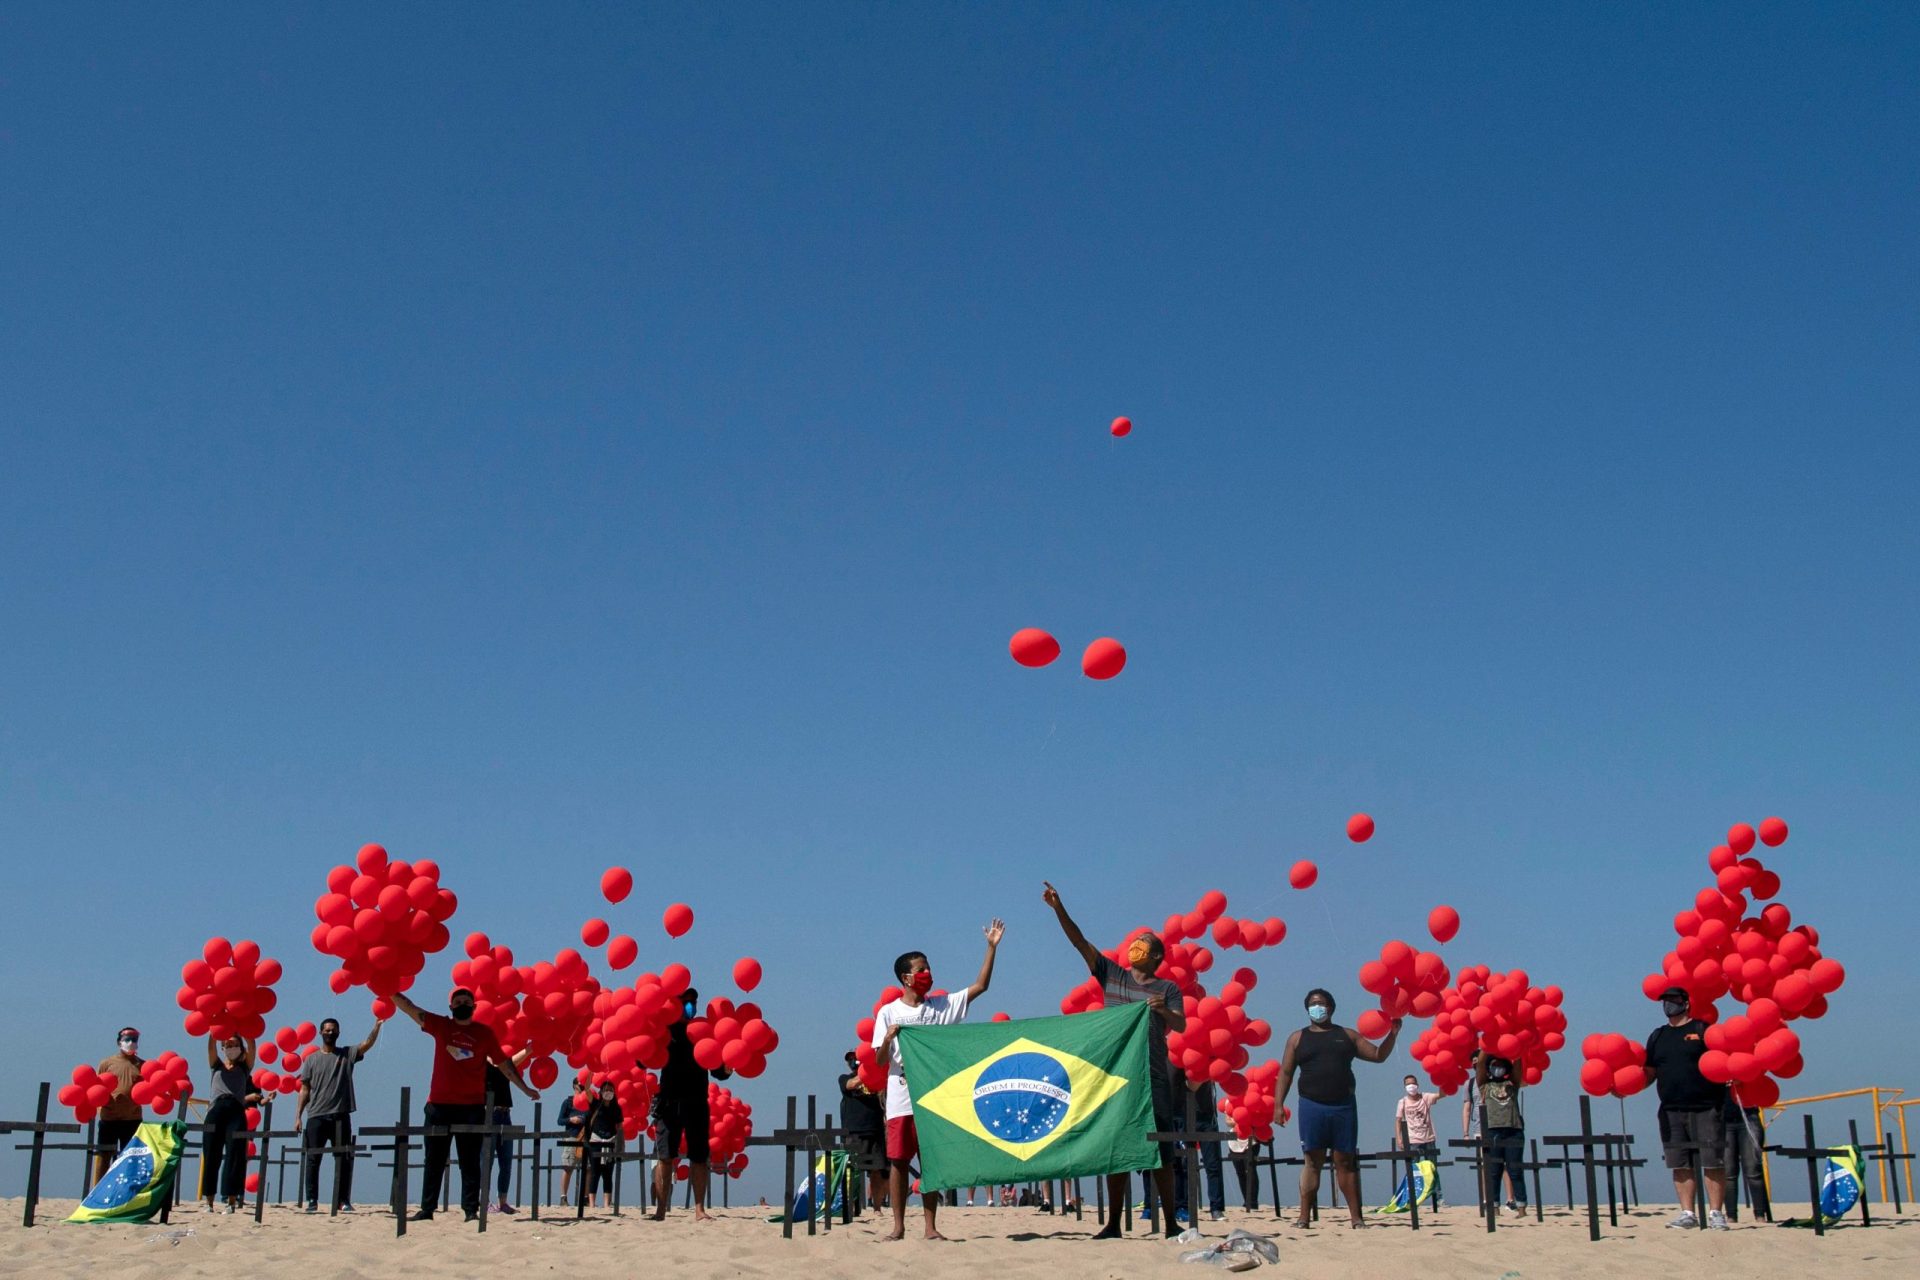 Brasil superou os 100 mil mortos devido à covid-19. Na praia de Copacabana homenagearam-se as vítimas